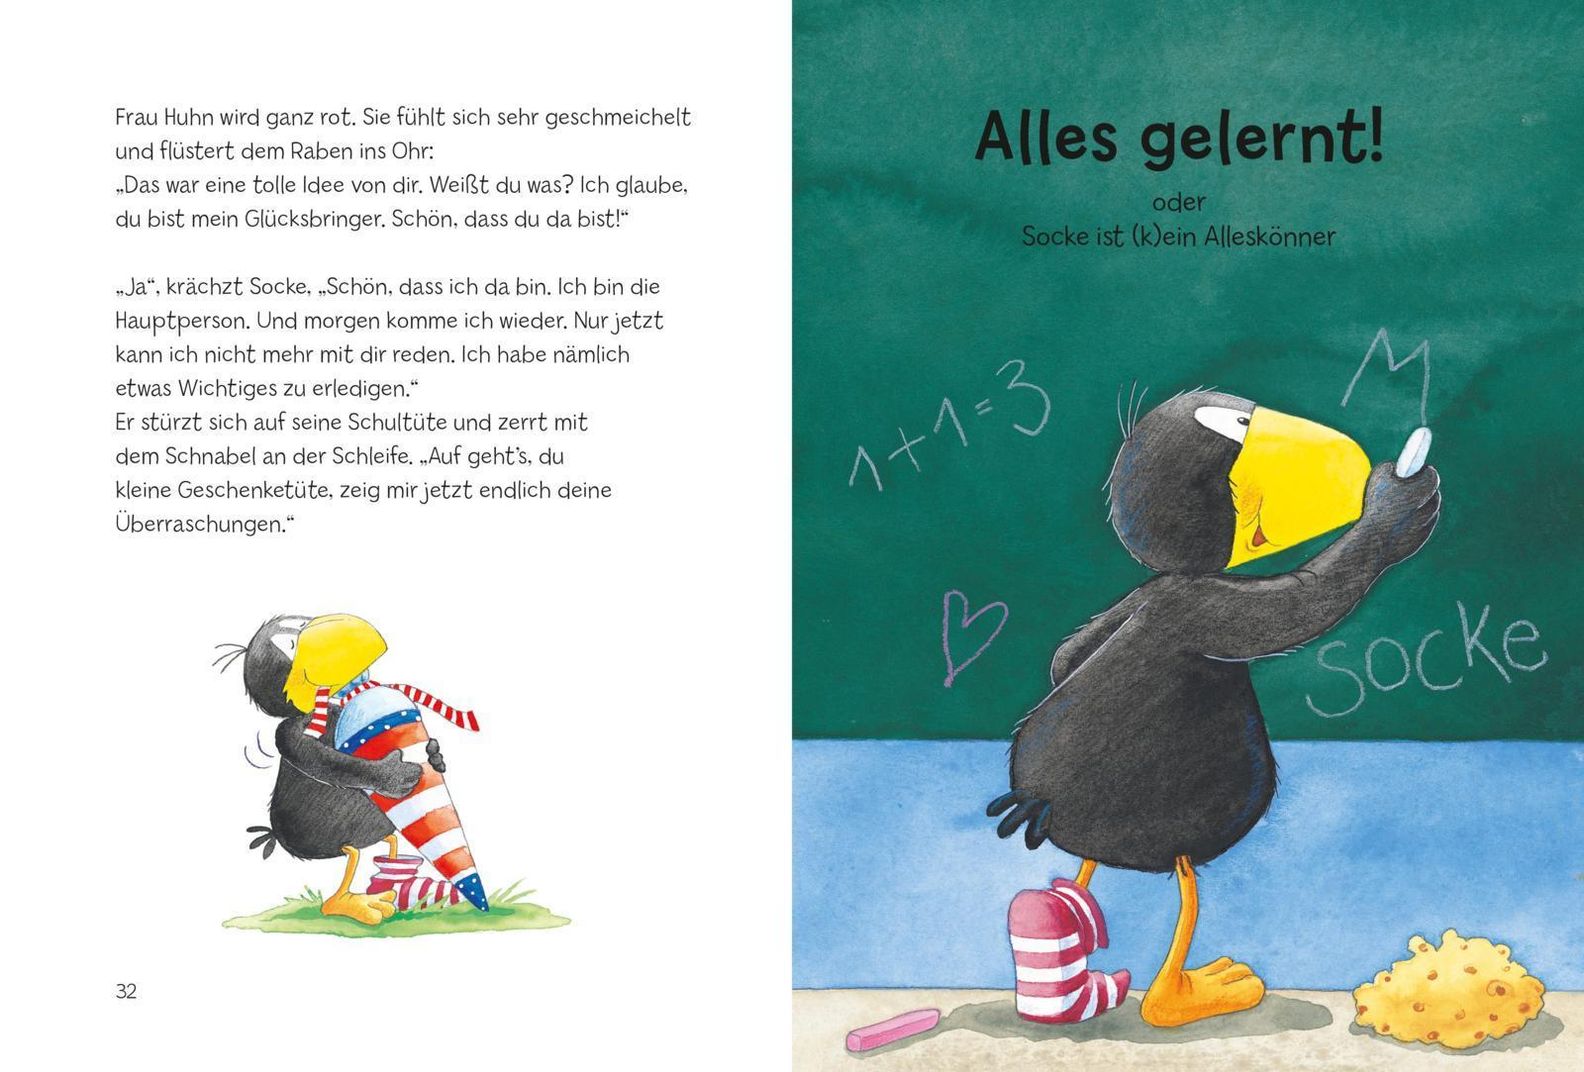 Der kleine Rabe Socke: Alles Schule! Buch versandkostenfrei - Weltbild.de